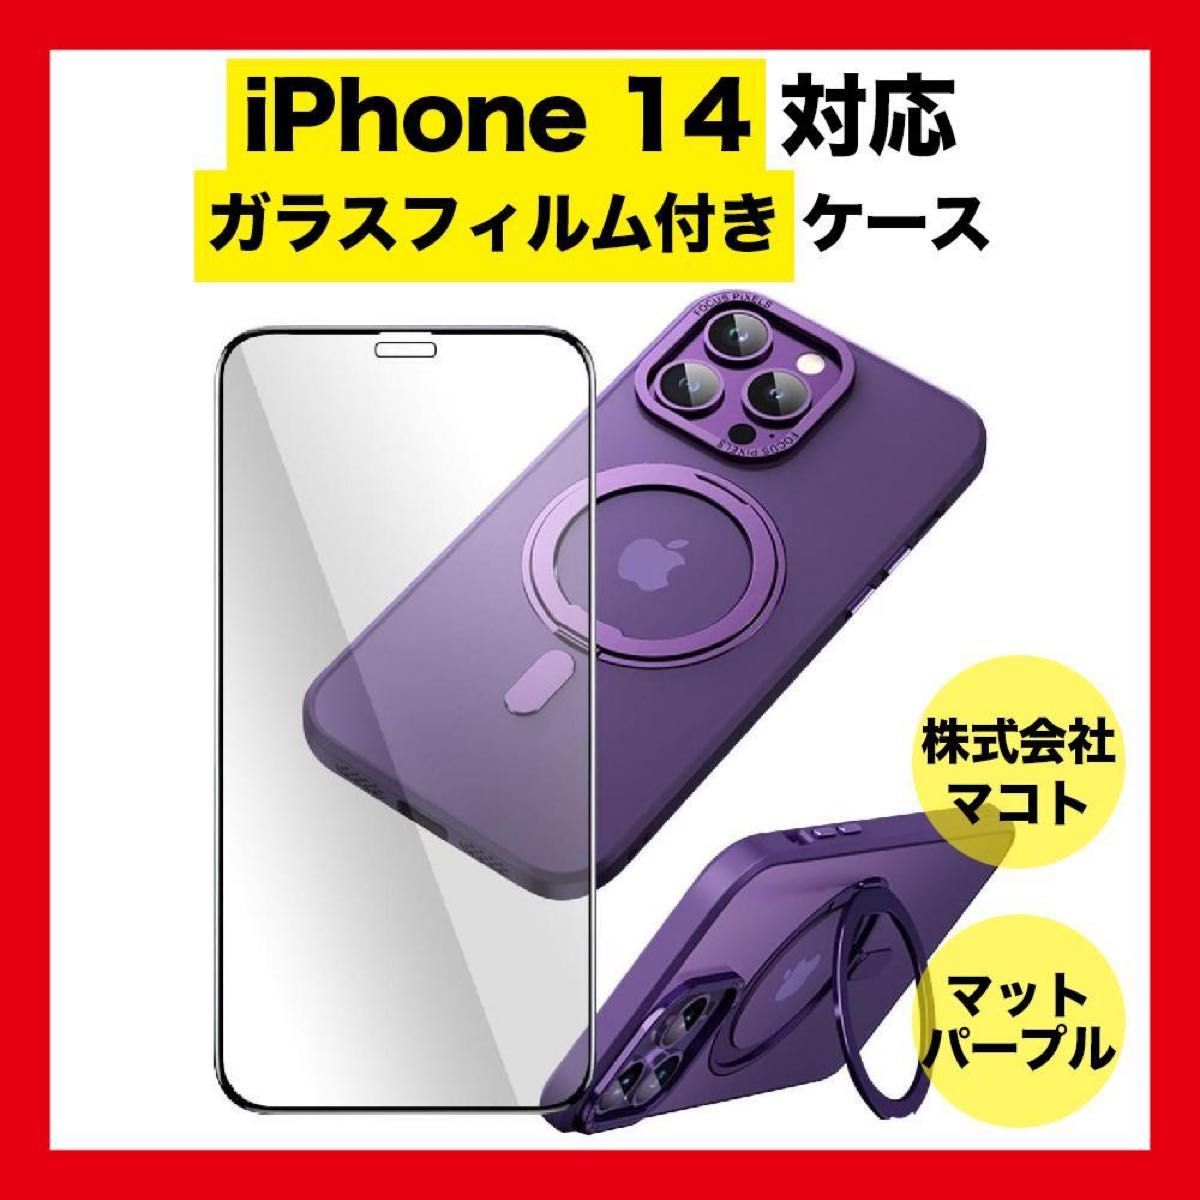 iPhone14ケース フィルム付き スタンド MagSafe ワイヤレス充電 ストラップホール付き リング付き ザラザラマット感